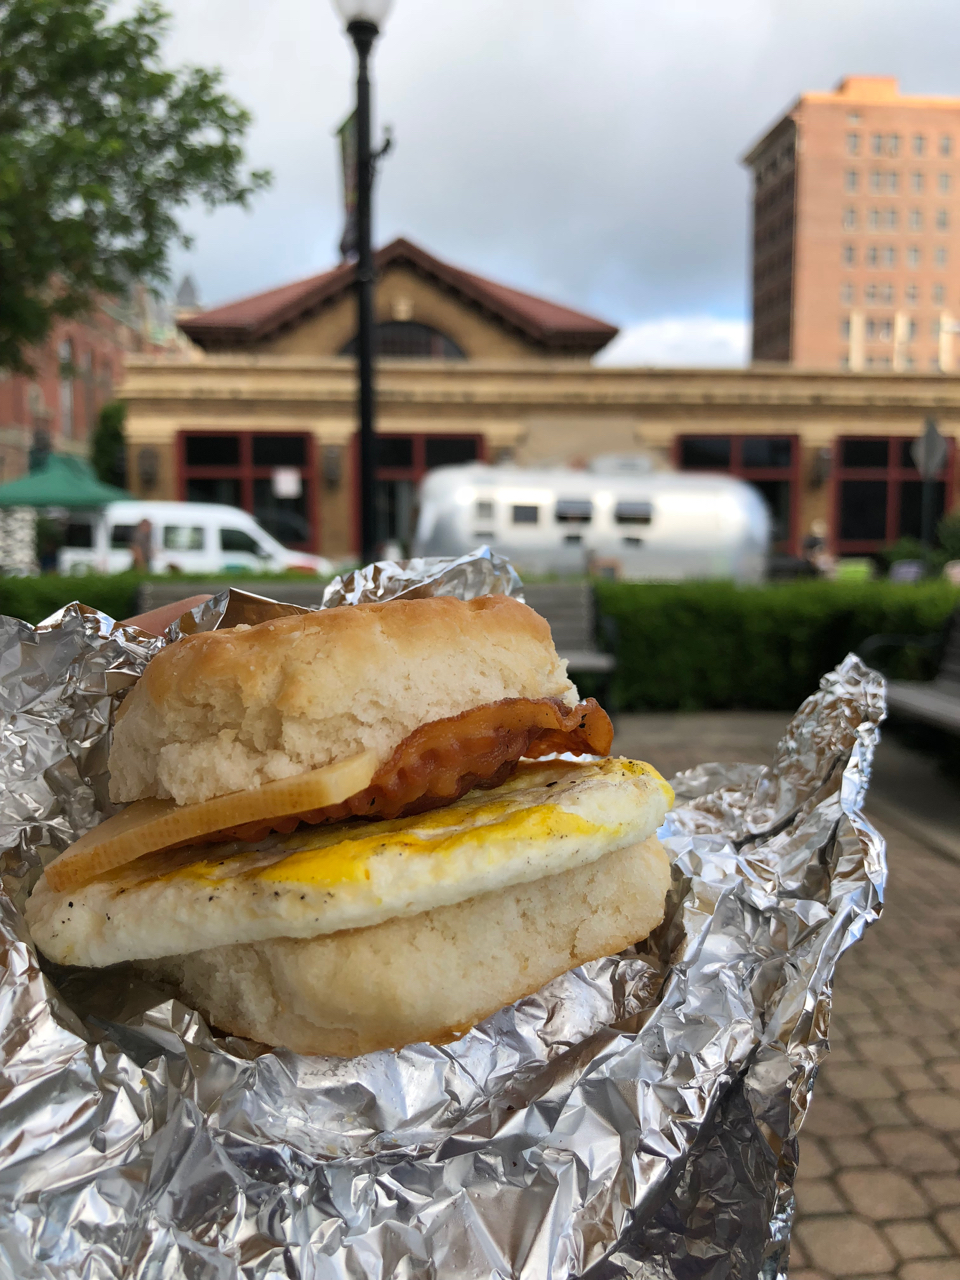 Egg sandwich outside Springfield Farmers Market